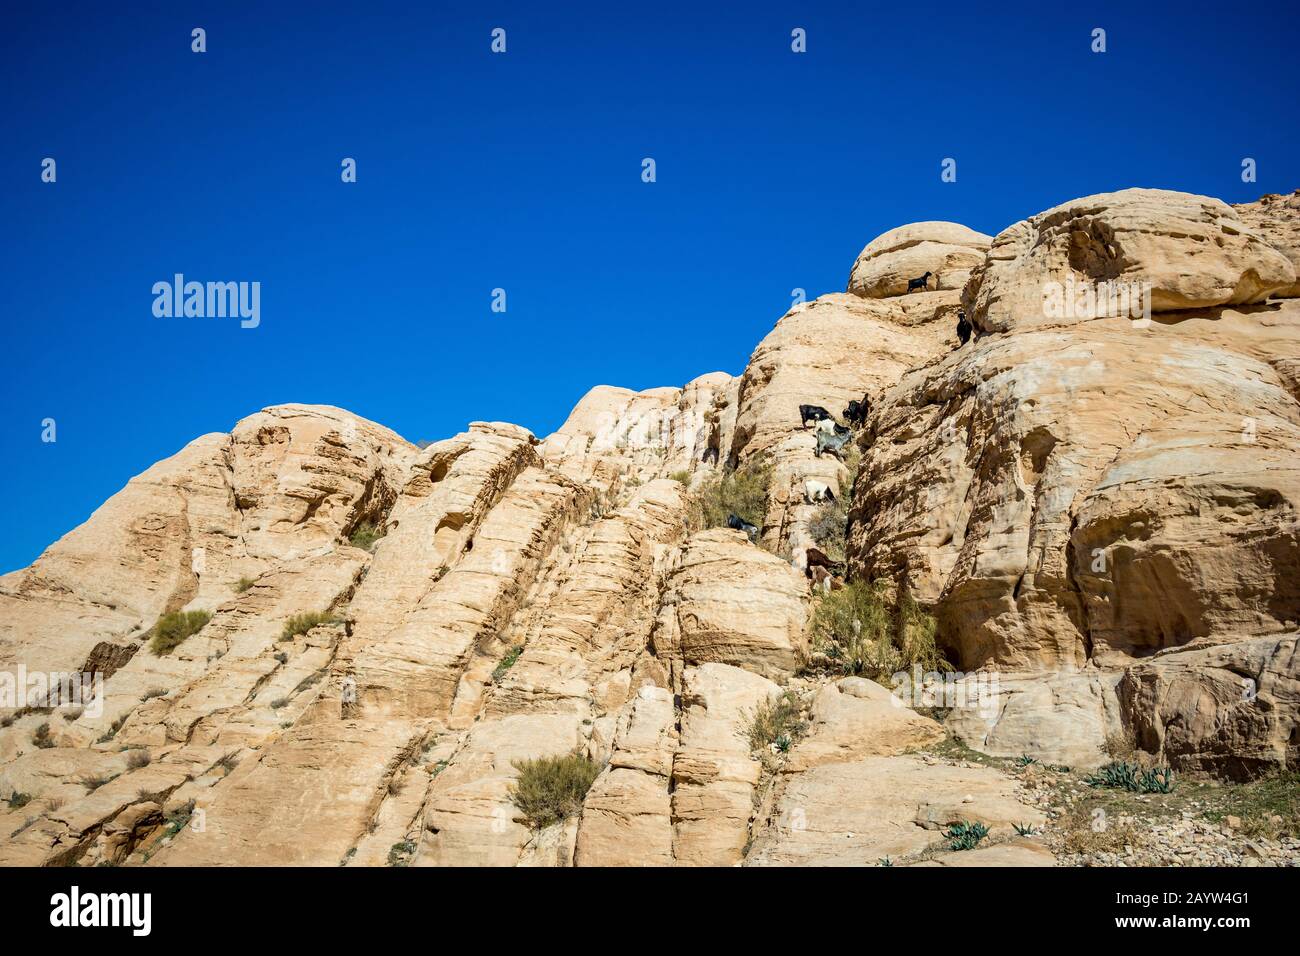 Petit groupe d'animaux de mammifères domestiques, sept chèvres dehors à nourrir haut sur les falaises de Petra, Jordanie. Début février, vue hiver. Ciel bleu sans nuages vu de la route principale Banque D'Images